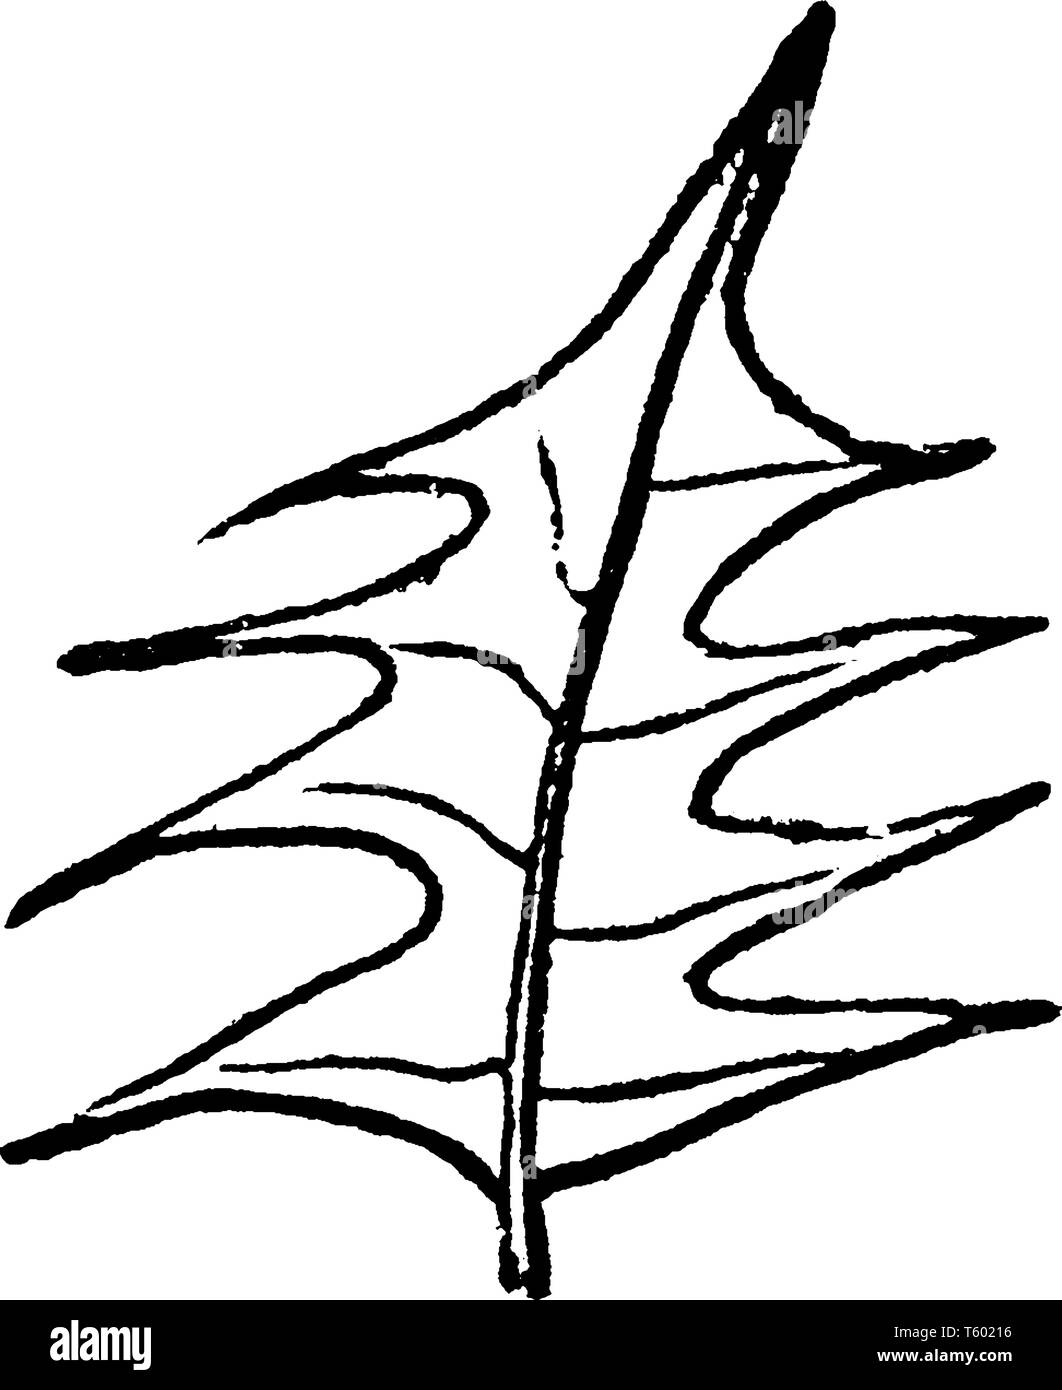 Arreglo de hojas alternas Imágenes de stock en blanco y negro - Alamy